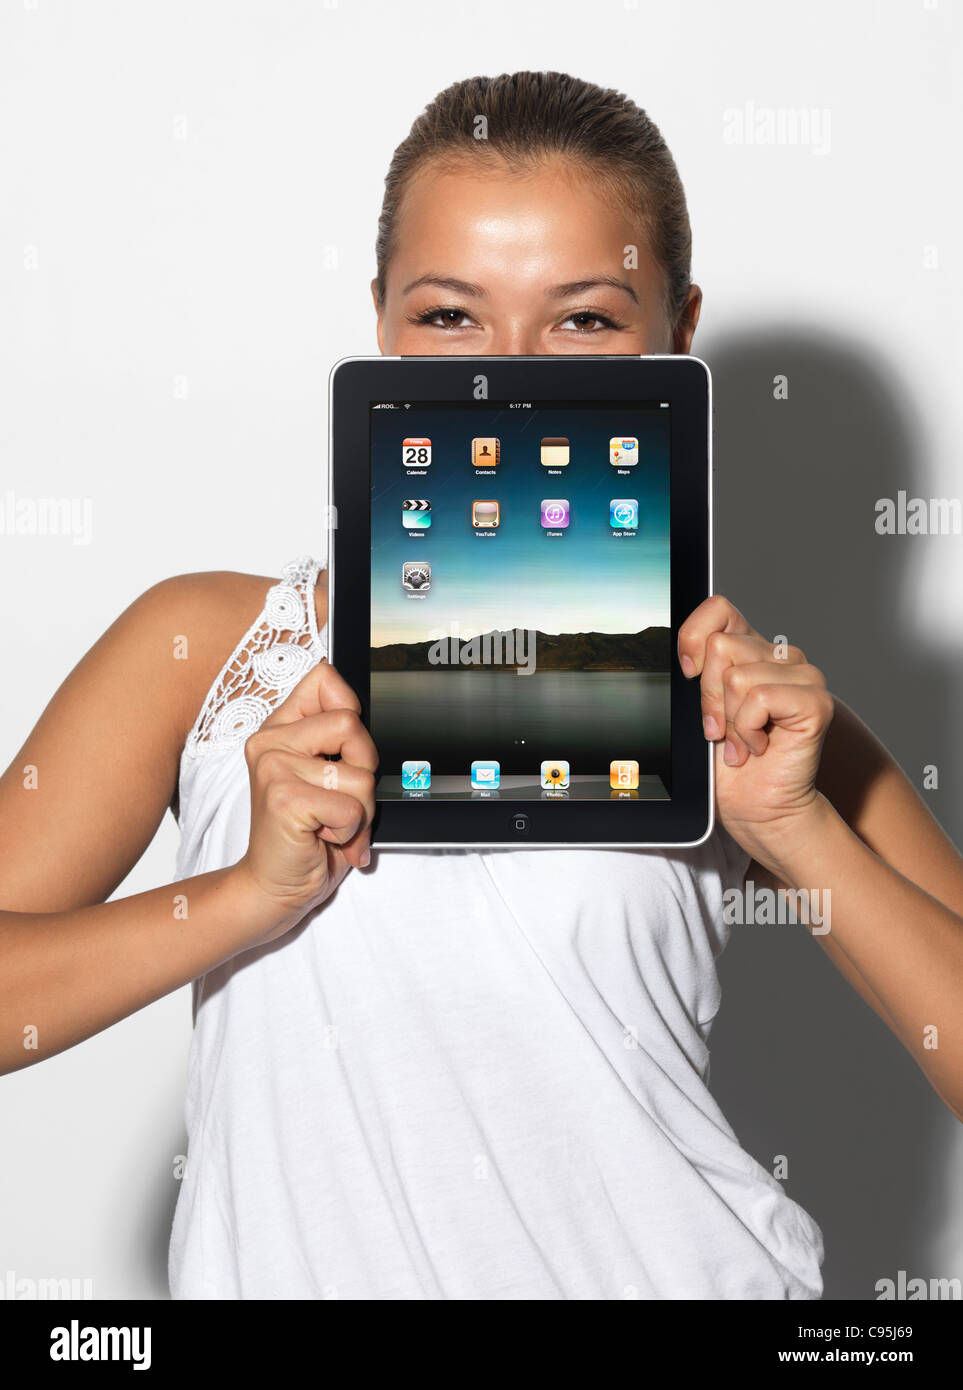 Lizenz erhältlich unter MaximImages.com - lächelnde junge asiatische Studentin mit Apple iPad Tablet in der Hand Stockfoto